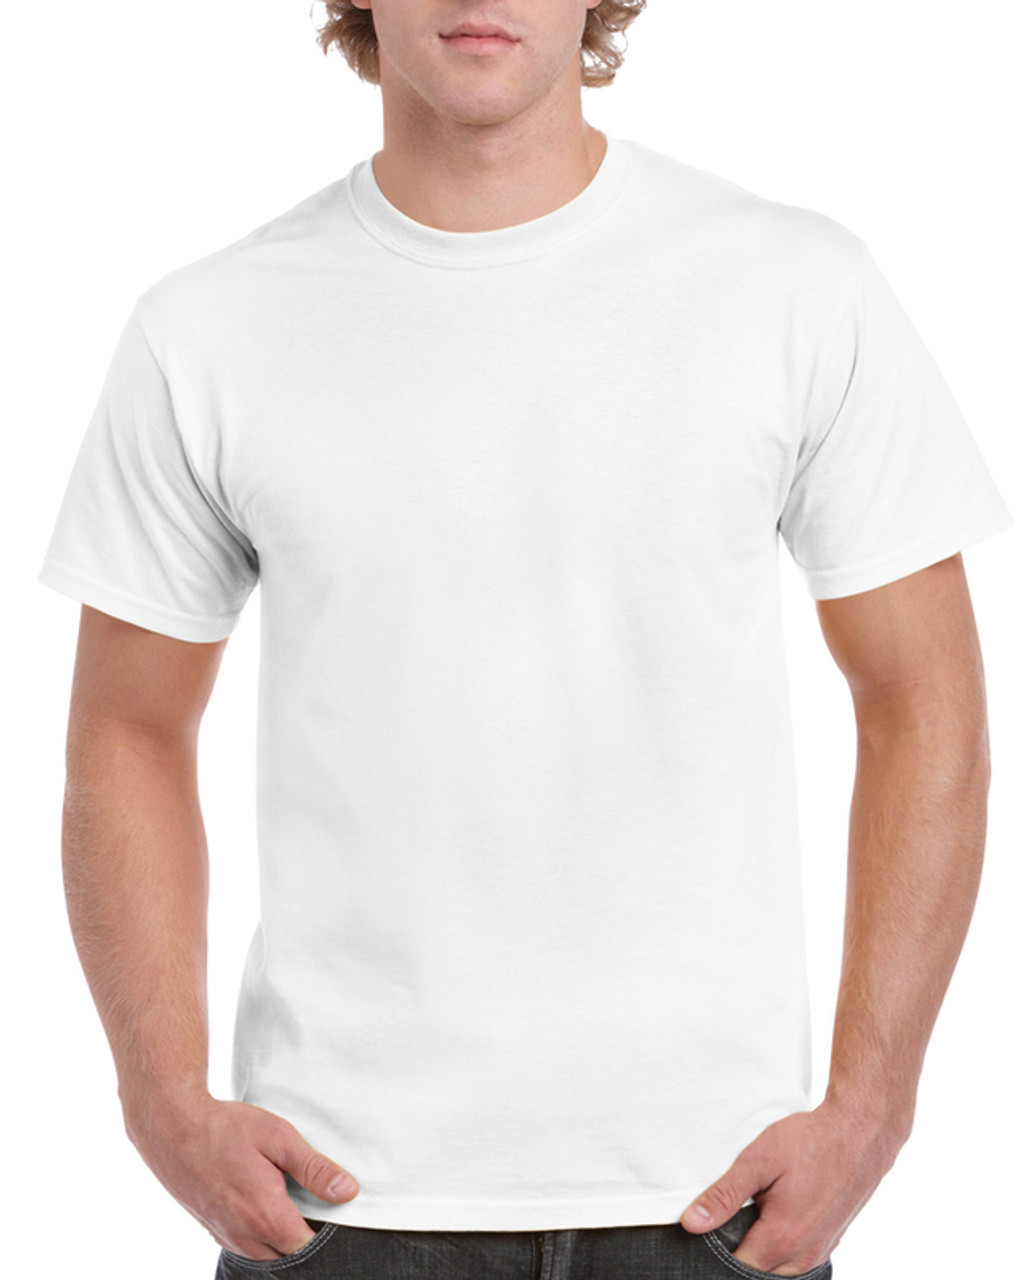 Adult T-Shirts 100%